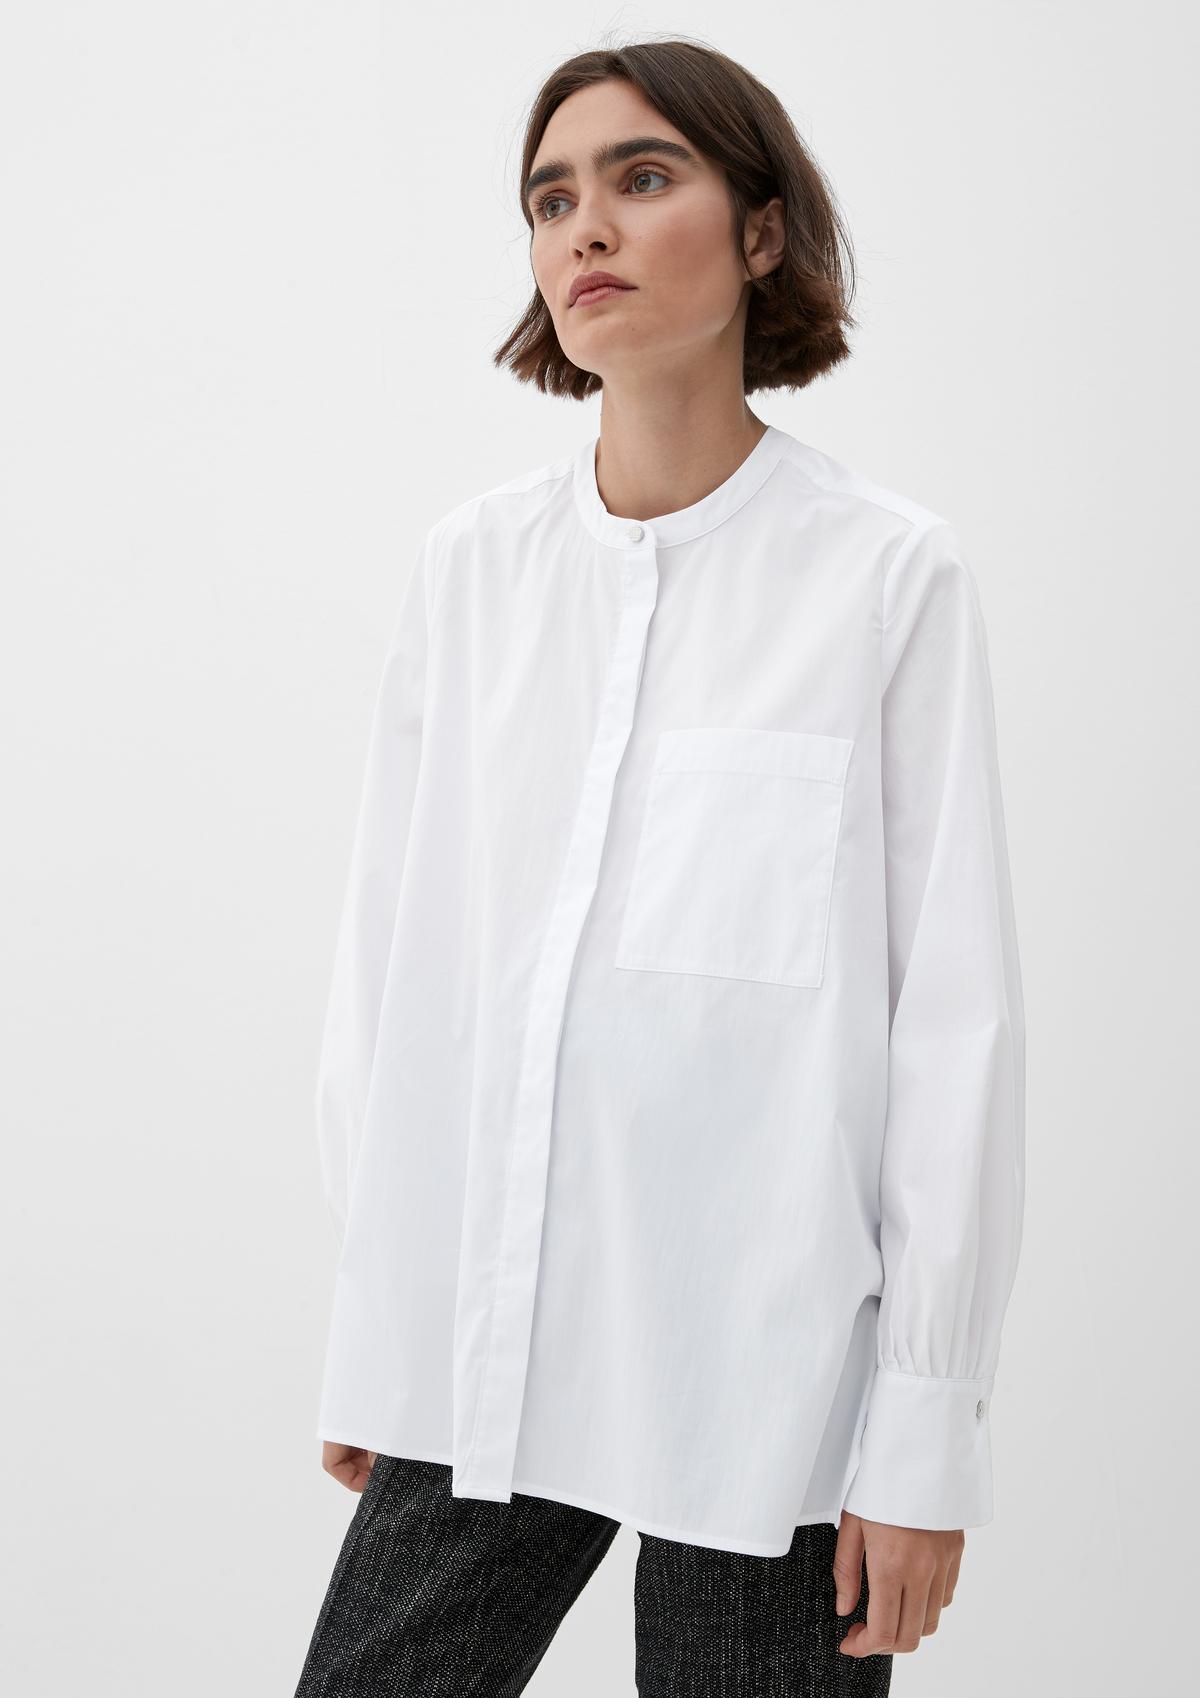 Bluse aus weiß Baumwollstretch -